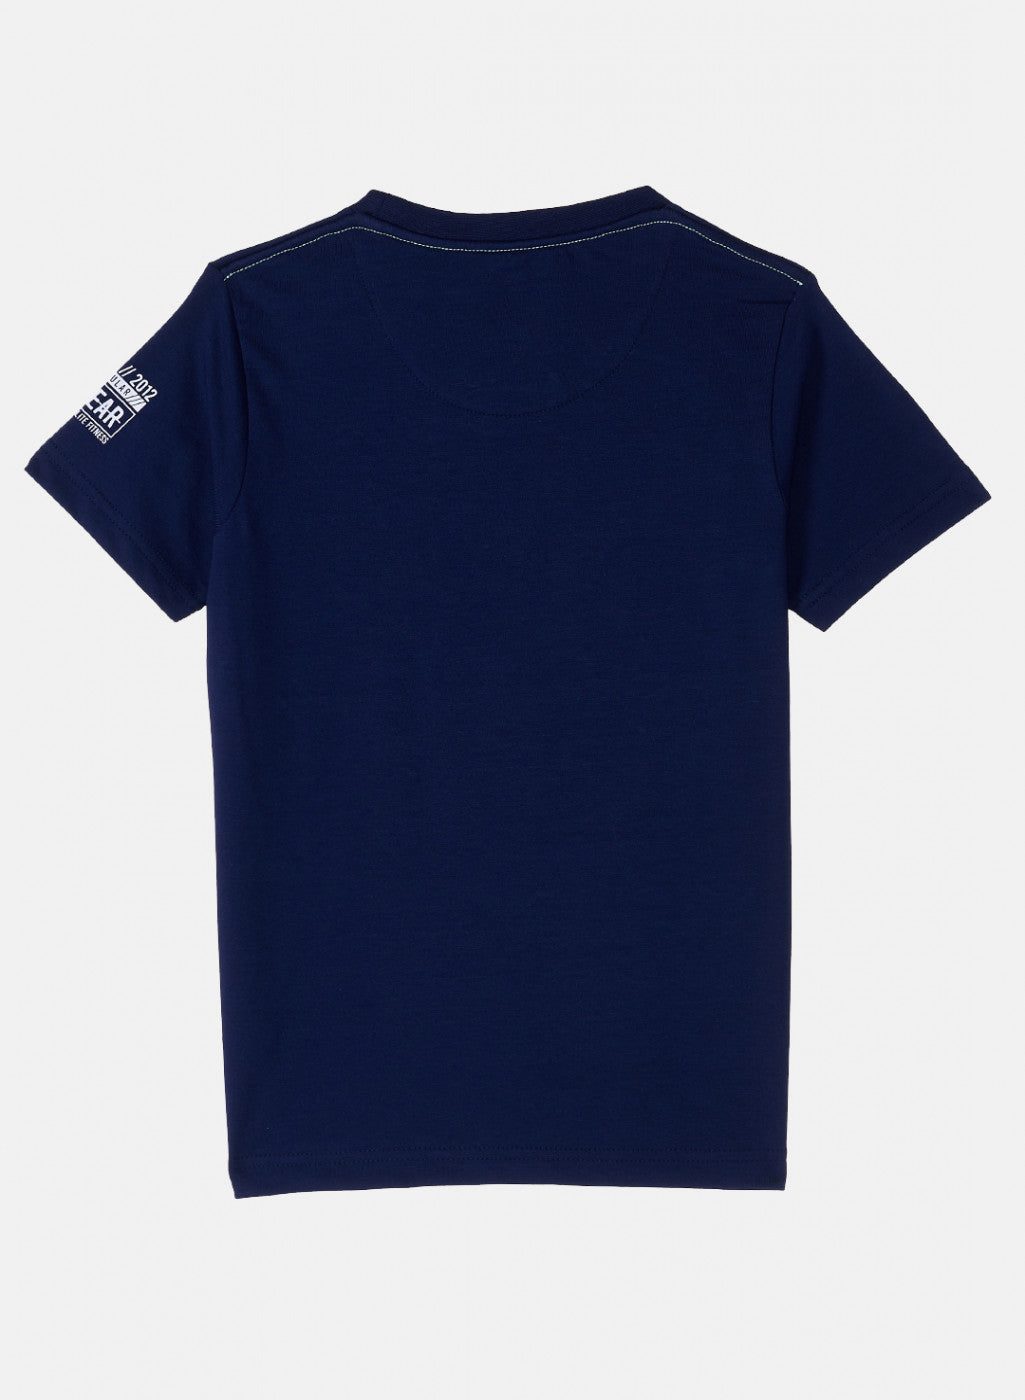 Boys Navy Blue Printed T-Shirt